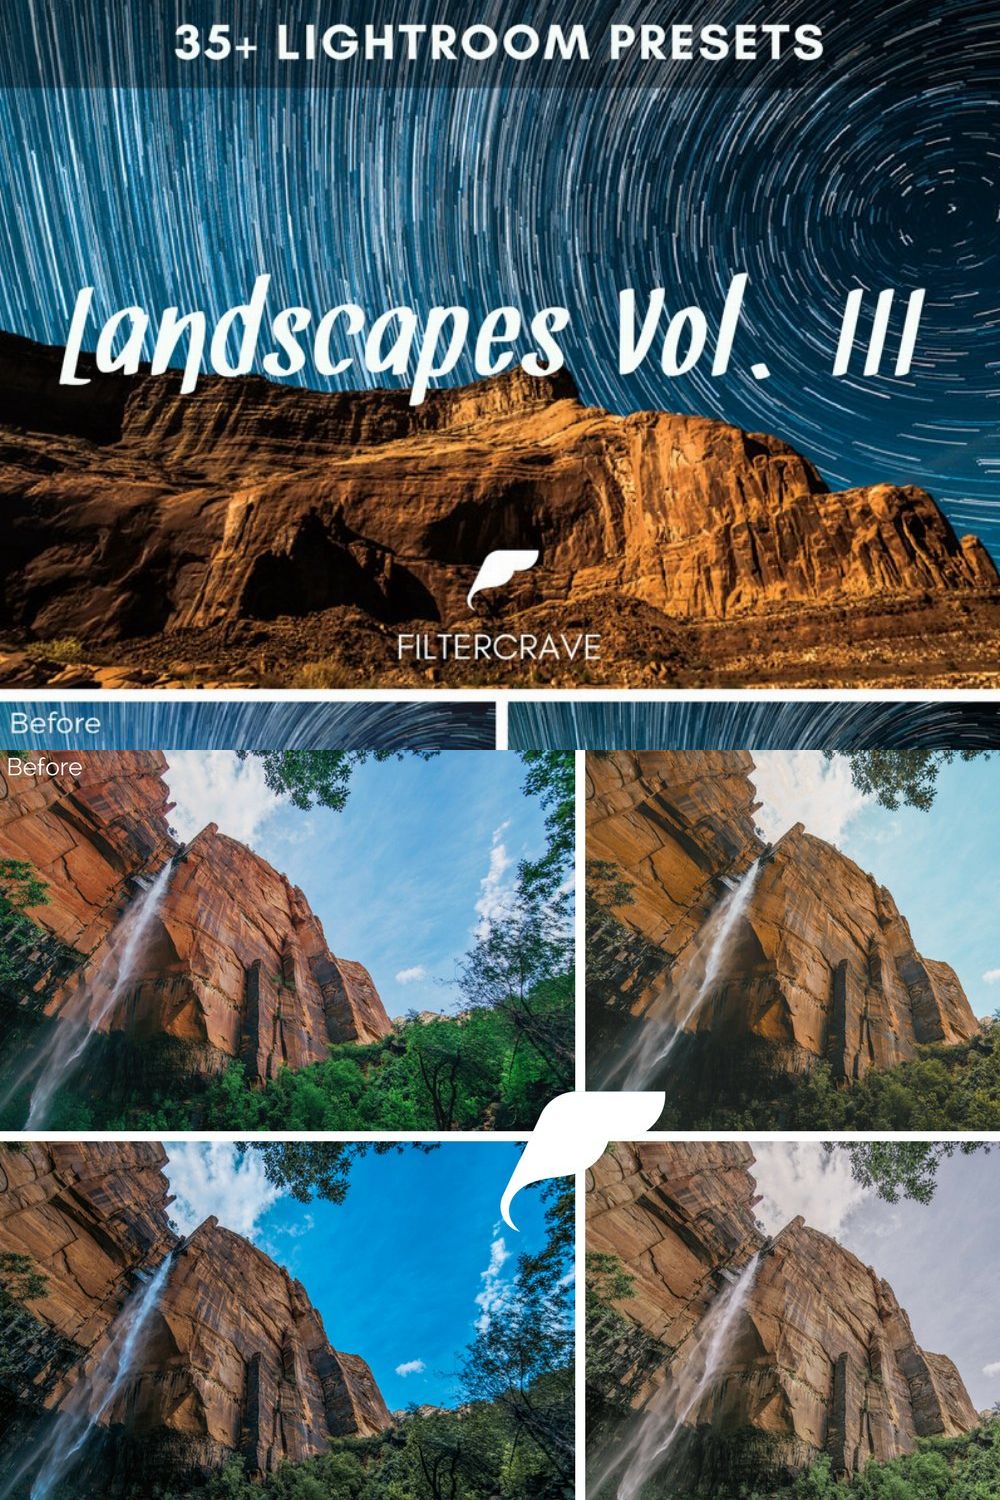 Landscape Lightroom Presets Vol. III pinterest preview image.